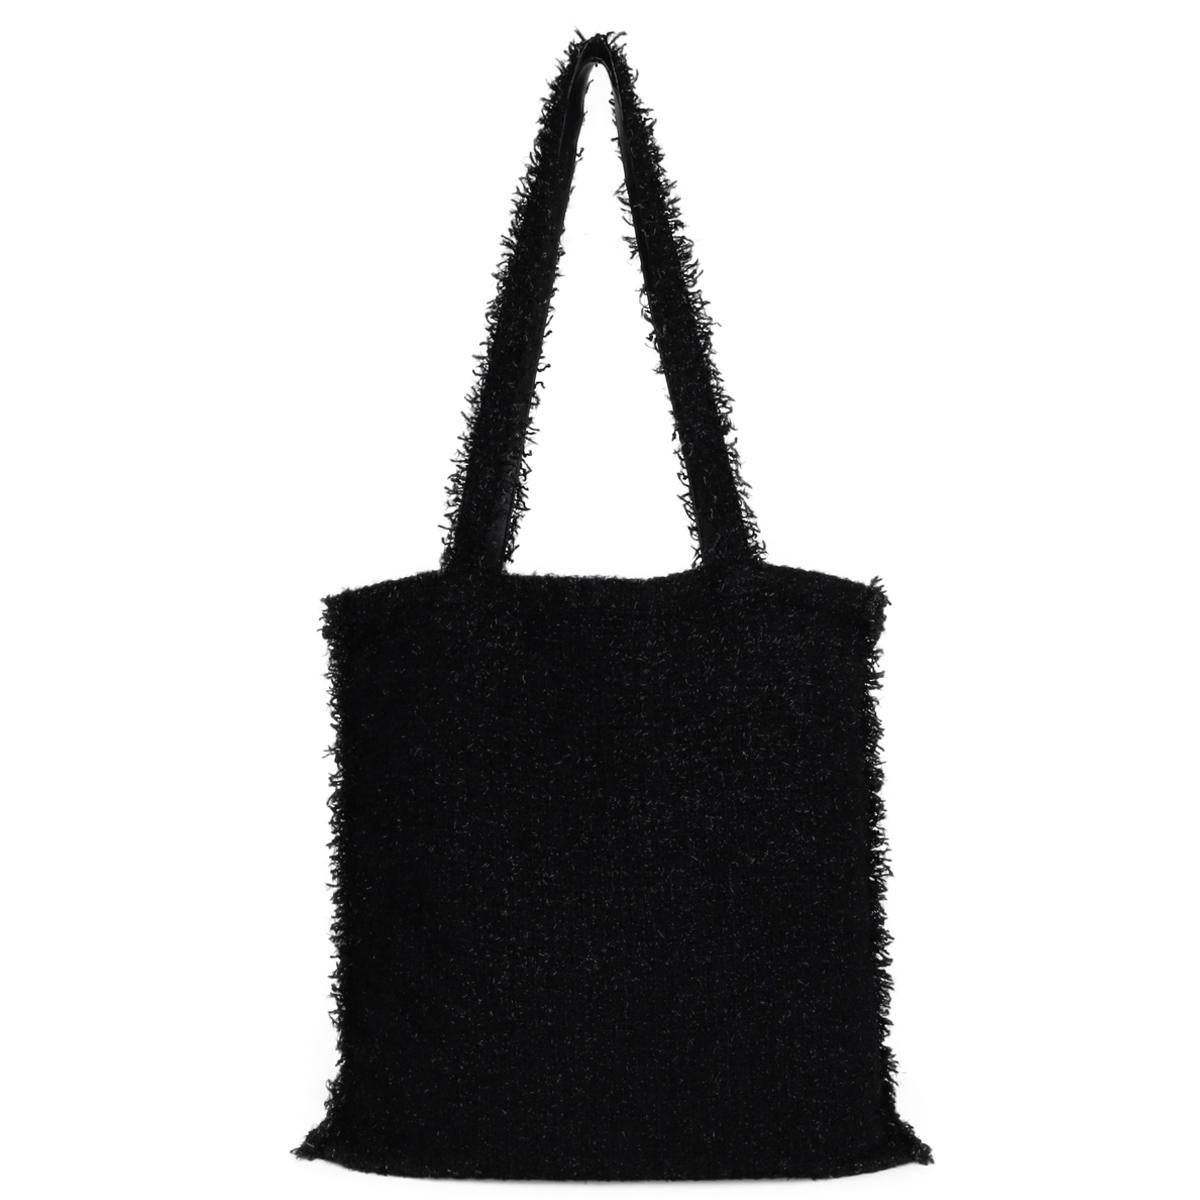 CHANEL Shopping in Fabrics Black Tweed Robot Tote Bag with Silver-Tone Hardware 2017 - 17S.

Diese atemberaubende Tasche ist immer noch in sehr gutem Zustand, und die Beschläge sind immer noch sehr sauber und glänzend.

- Äußerer Zustand: Sehr guter